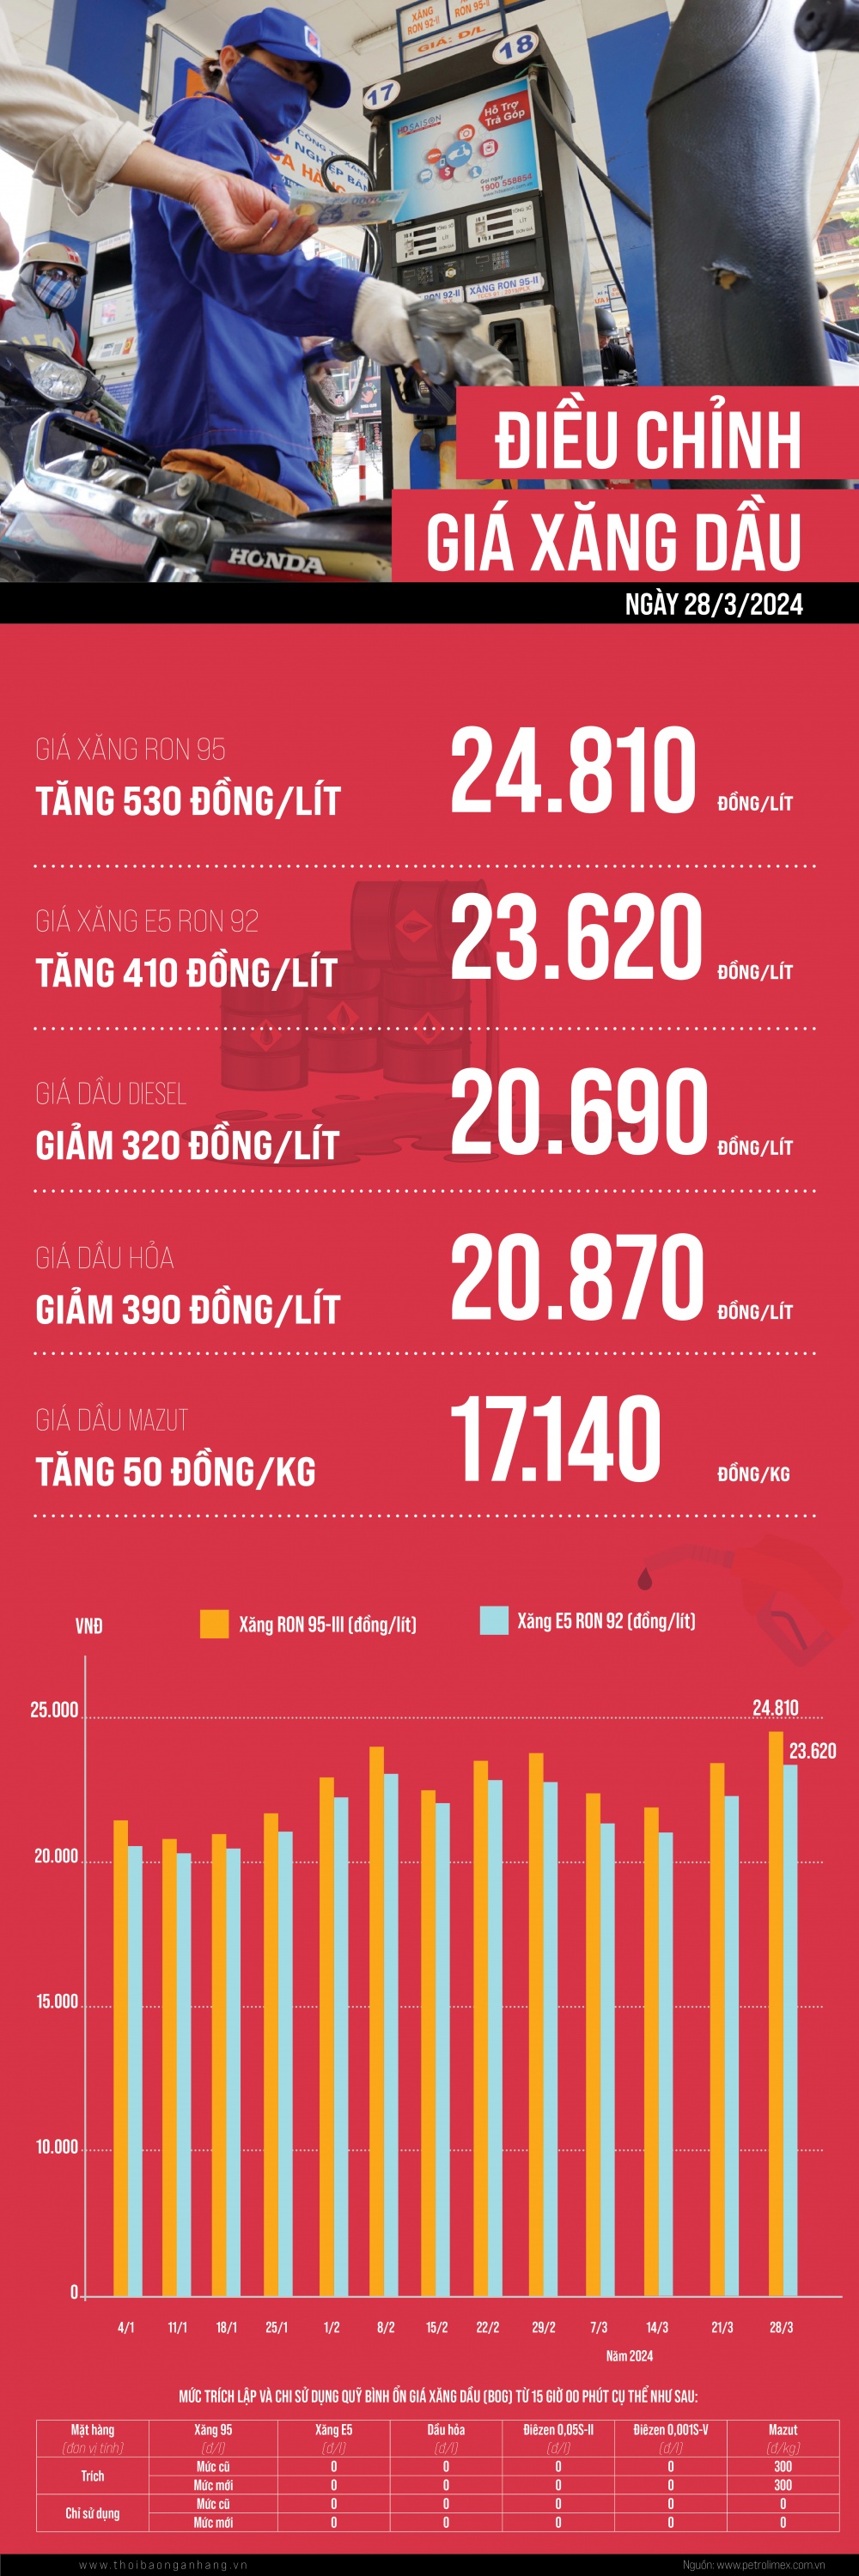 [Infographic] Giá xăng tăng, dầu giảm trong phiên điều hành 28/03/2024